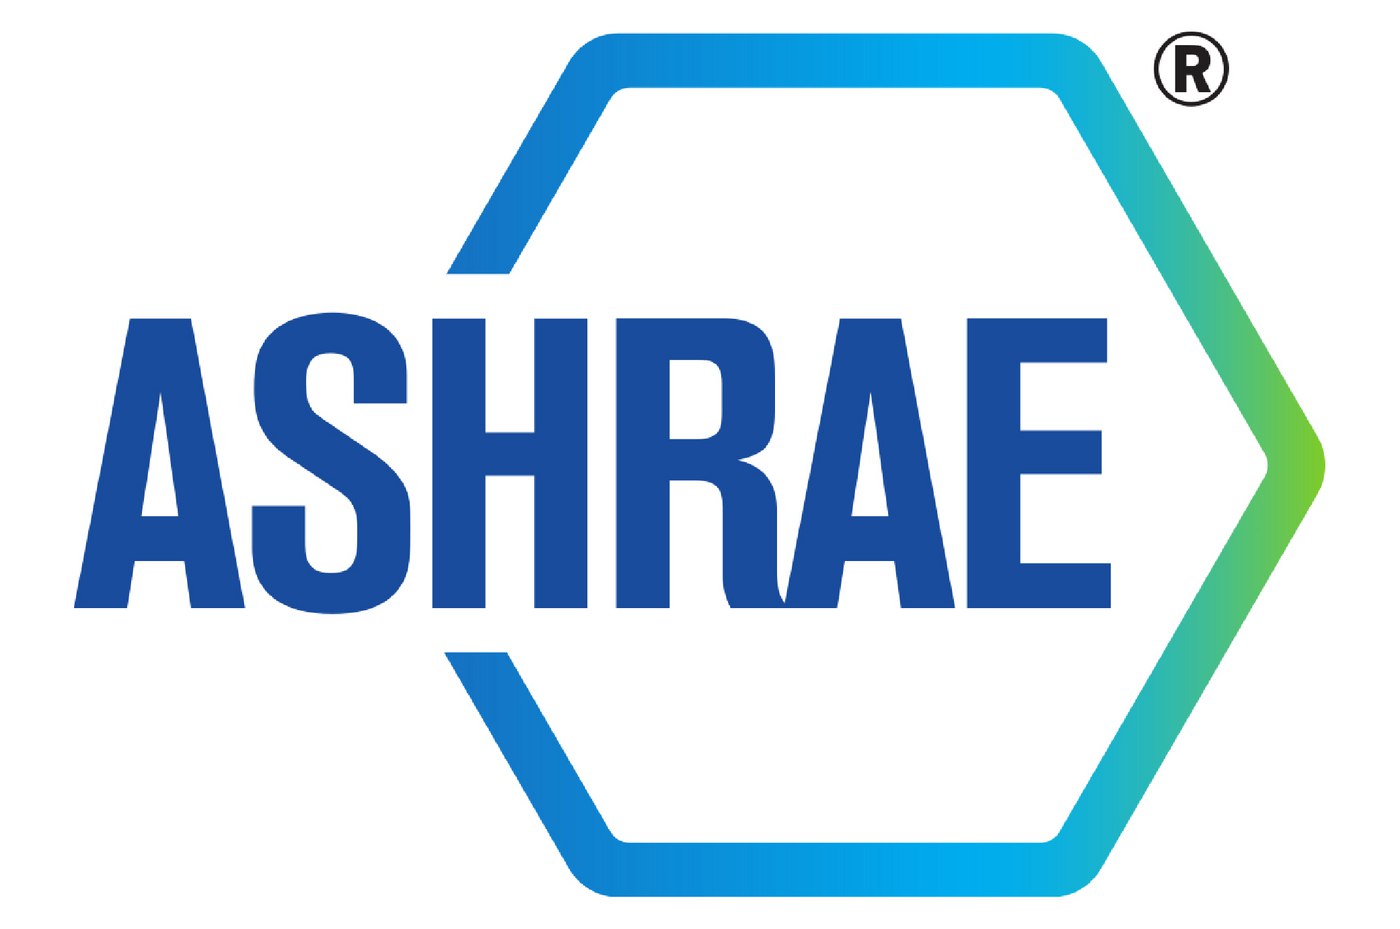 ASHRAE-logo